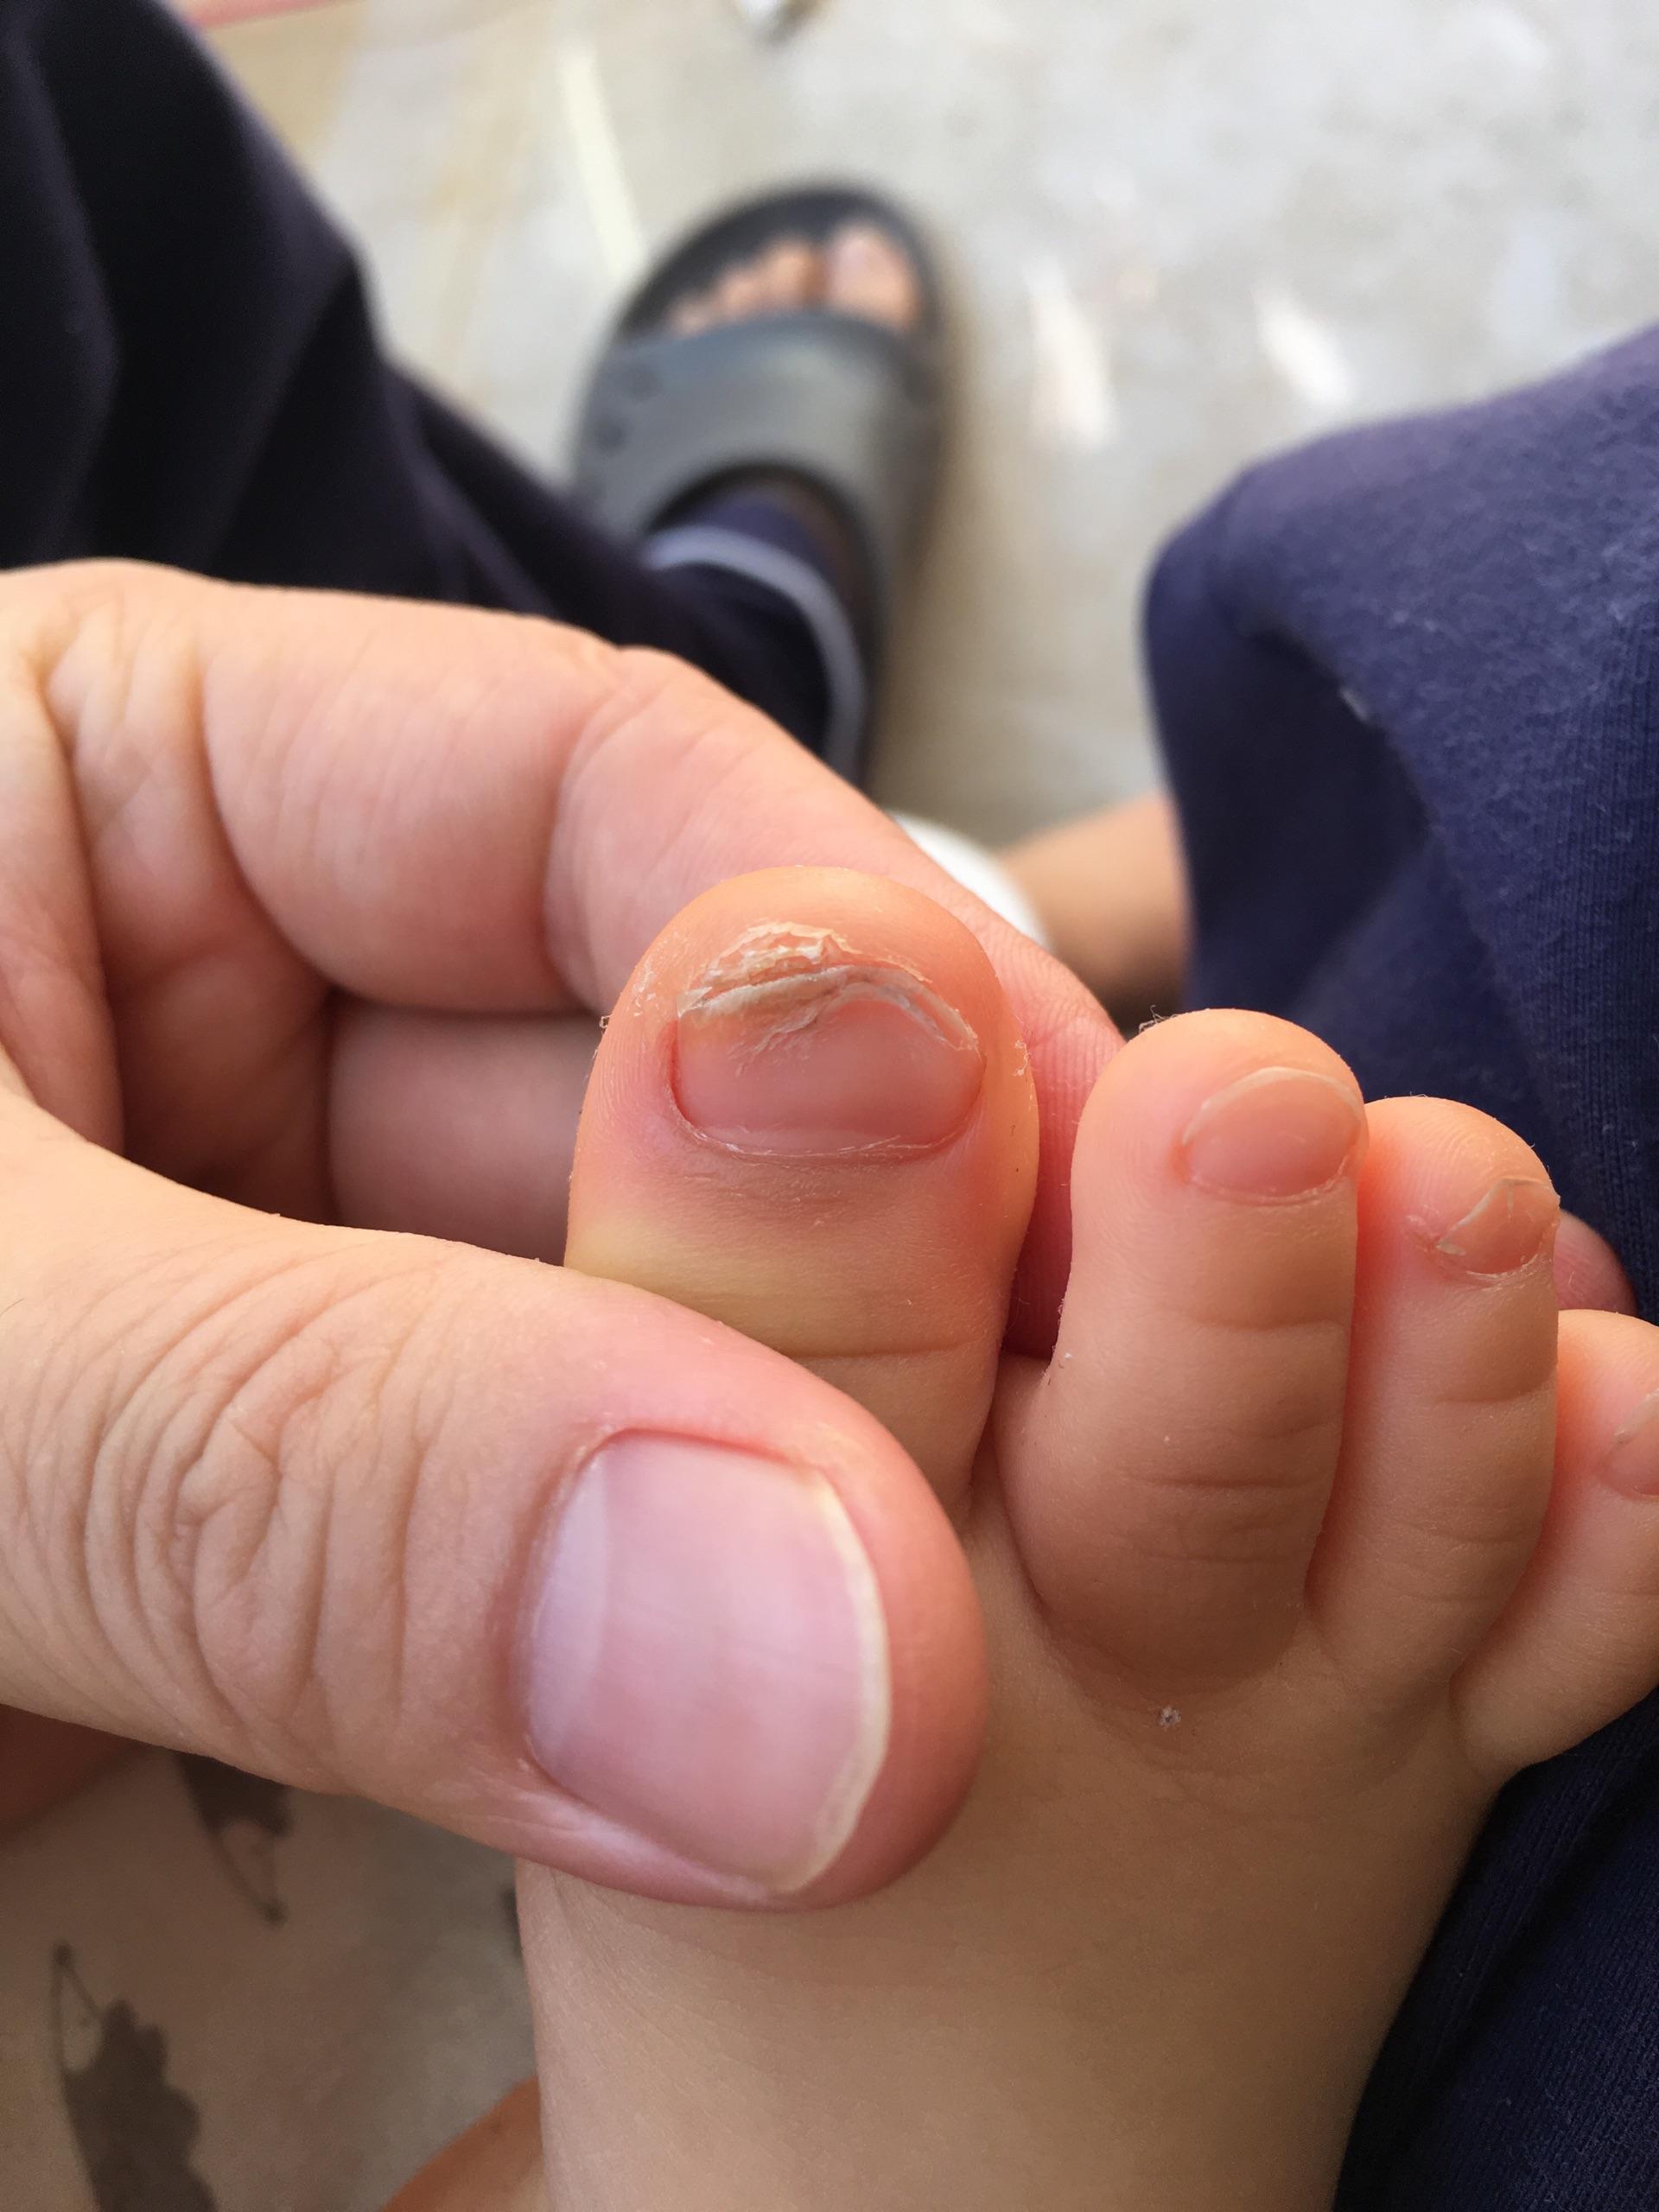 发现小儿指甲有点异常,有经历过的宝爸宝妈或医生,请给些建议,谢谢你